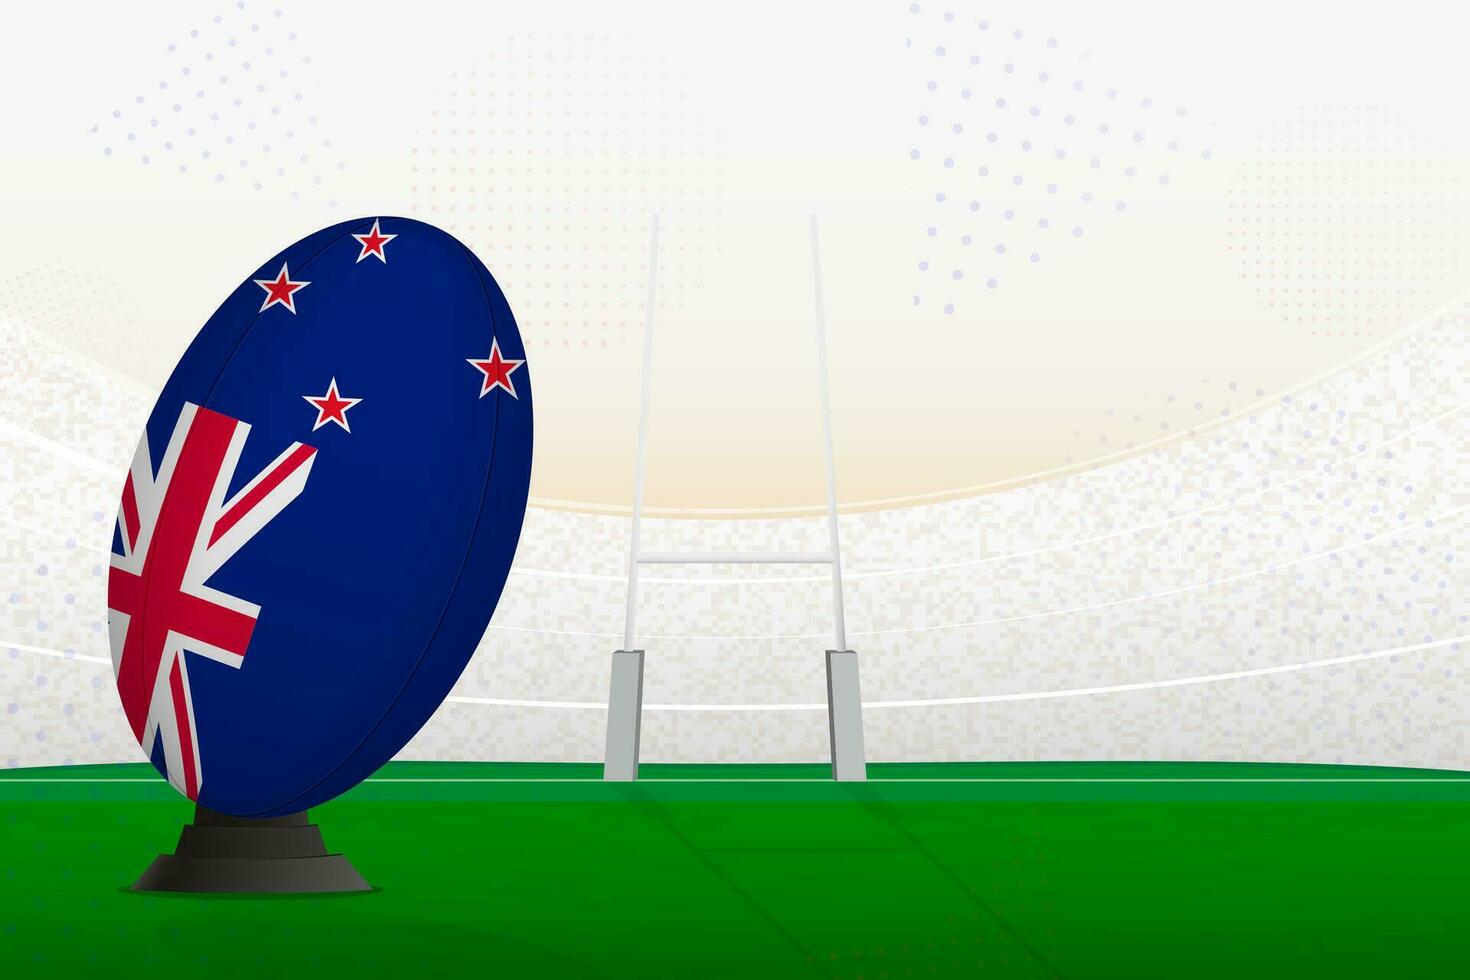 nieuw Zeeland nationaal team rugby bal Aan rugby stadion en doel berichten, voorbereidingen treffen voor een straf of vrij trap. vector